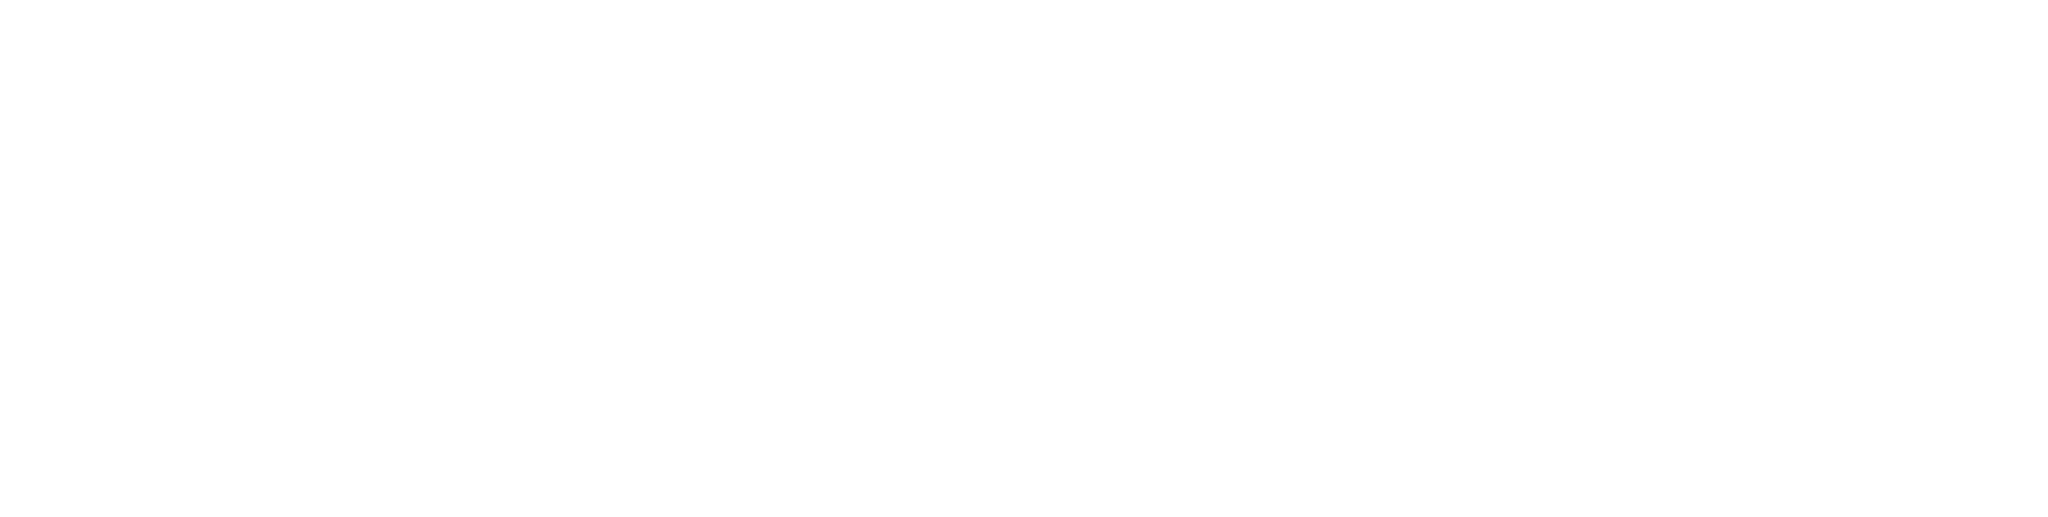 SOCIAL-01